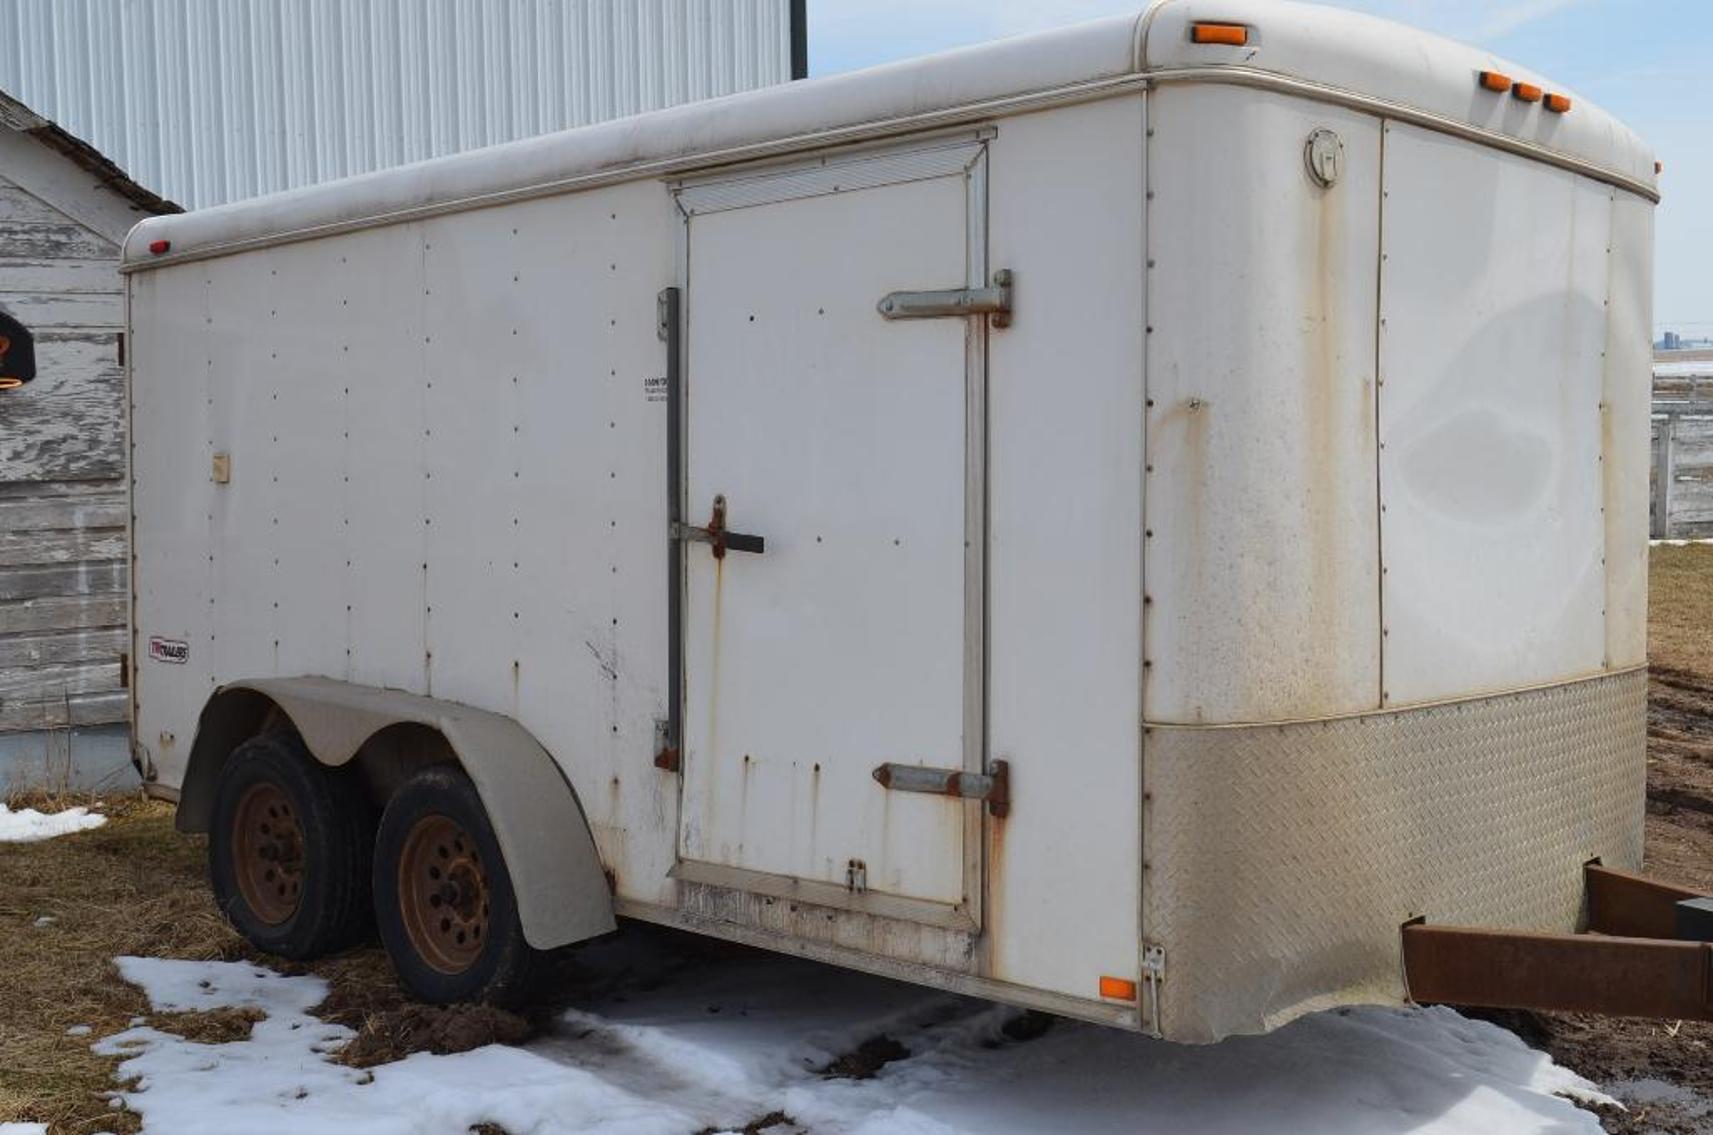 Dump Truck, Excavator & Dairy Farm Equipment